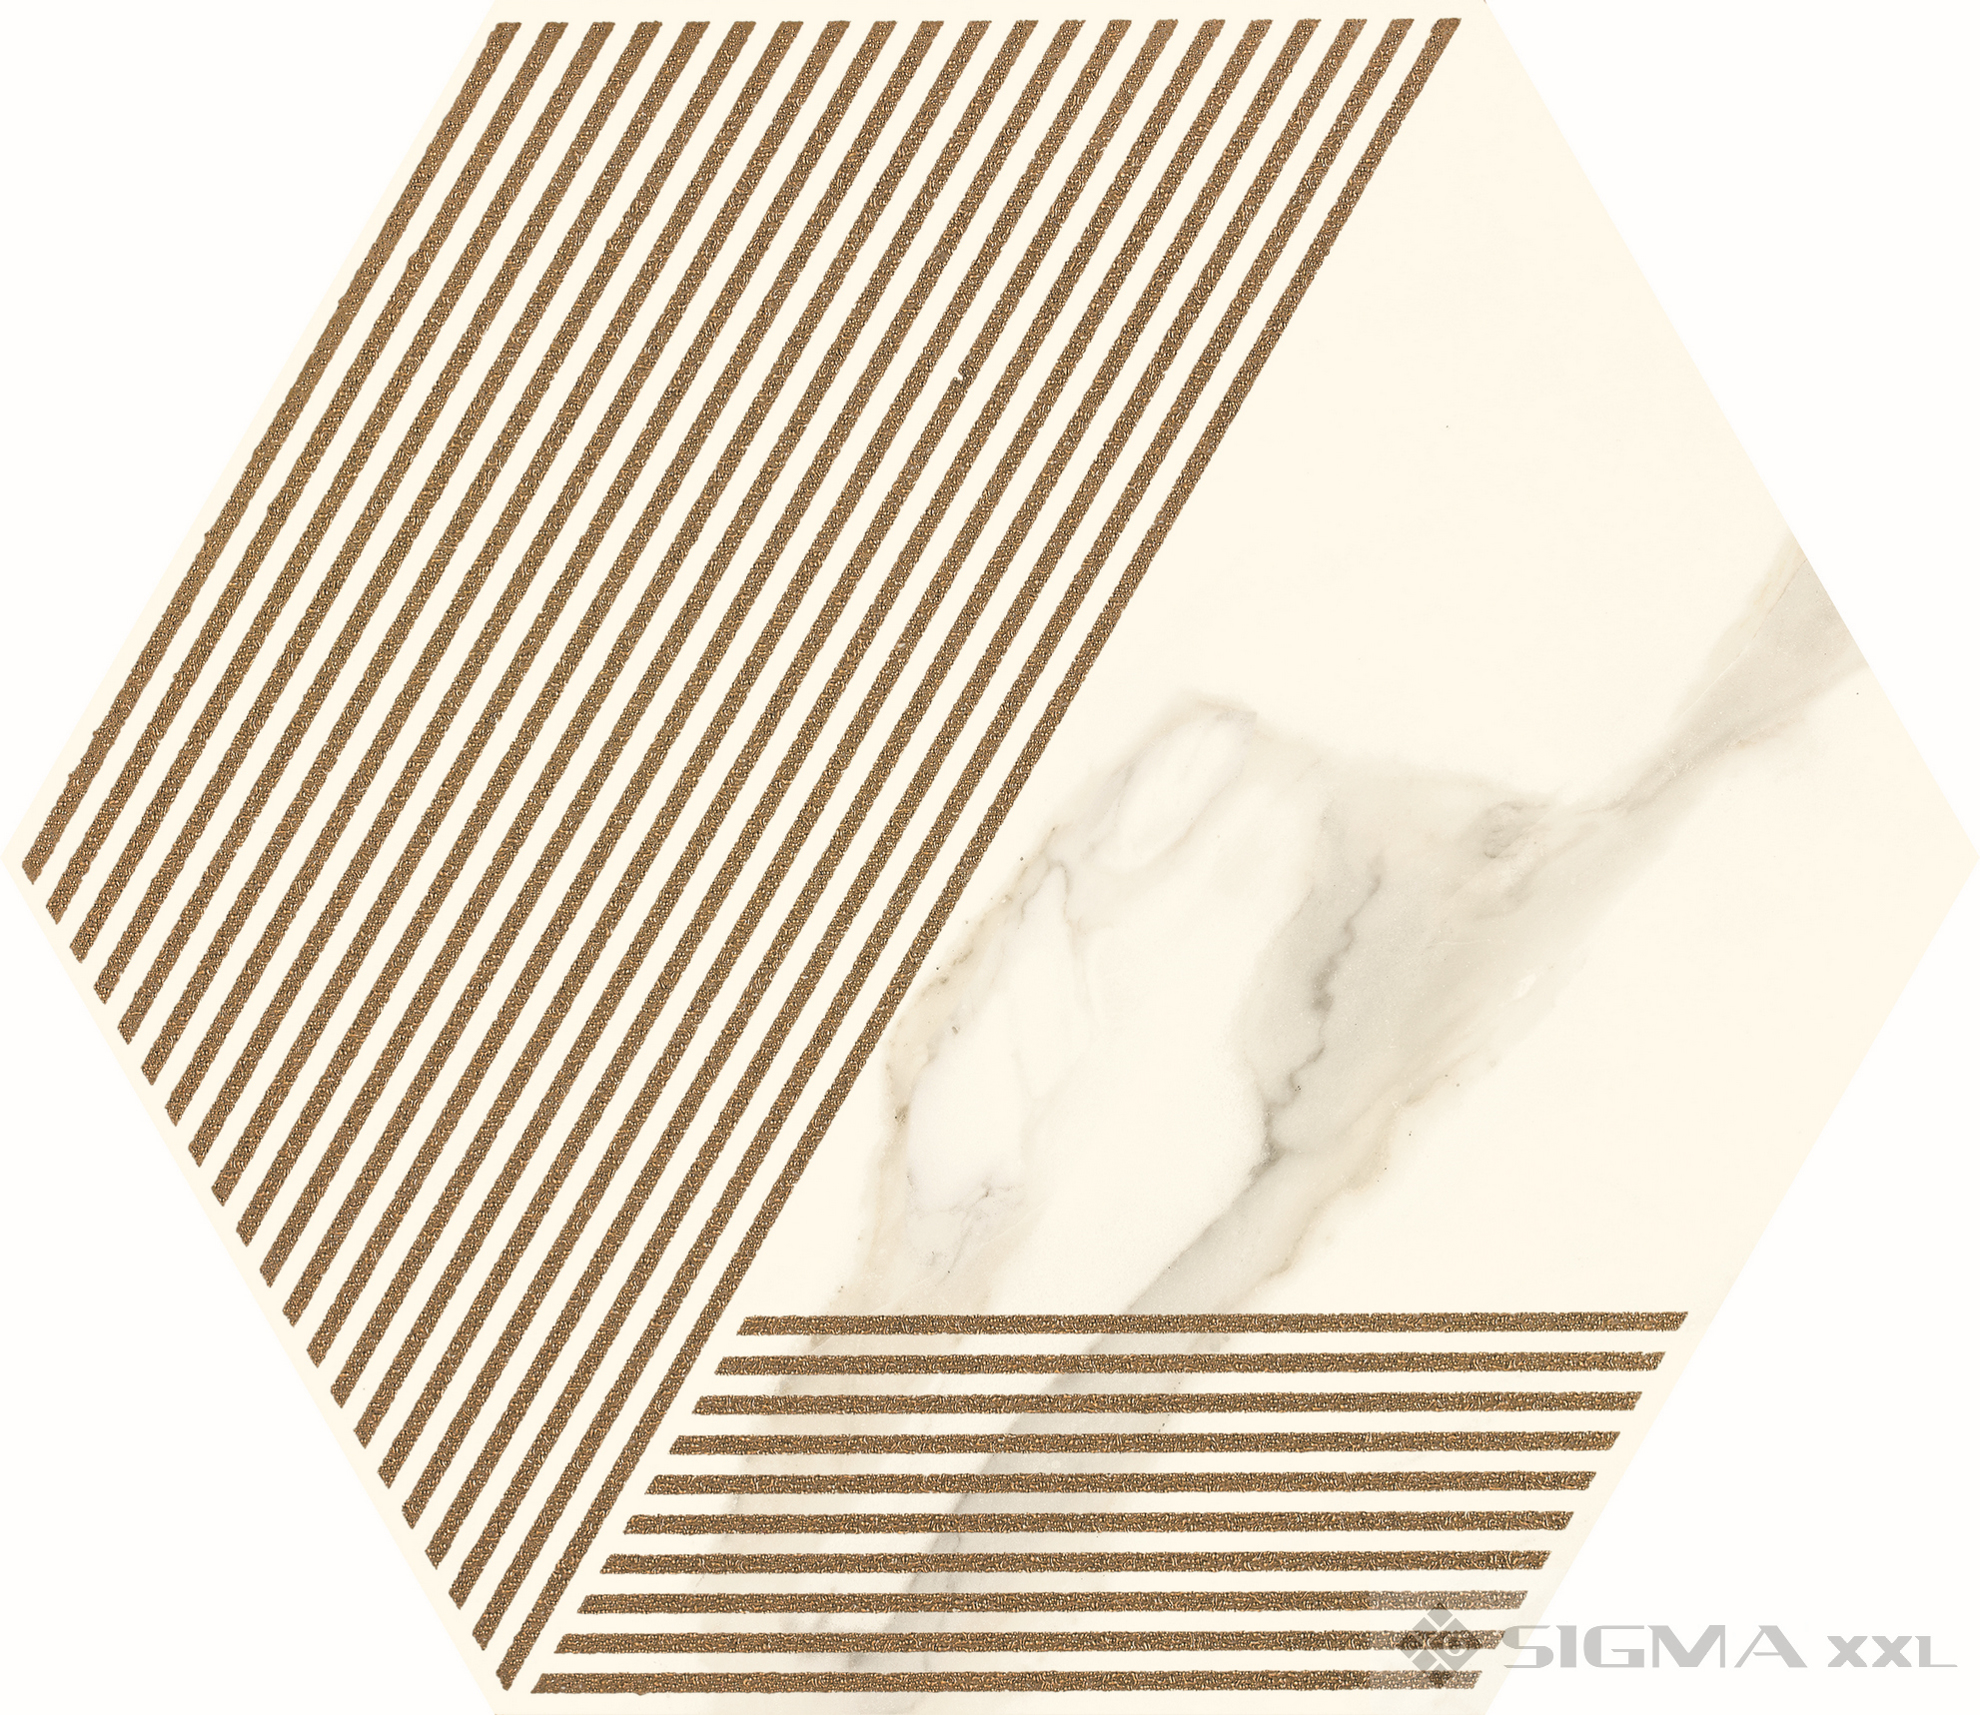 Imagine DECOR Calacatta Hexagon A MAT 17,1x19,8